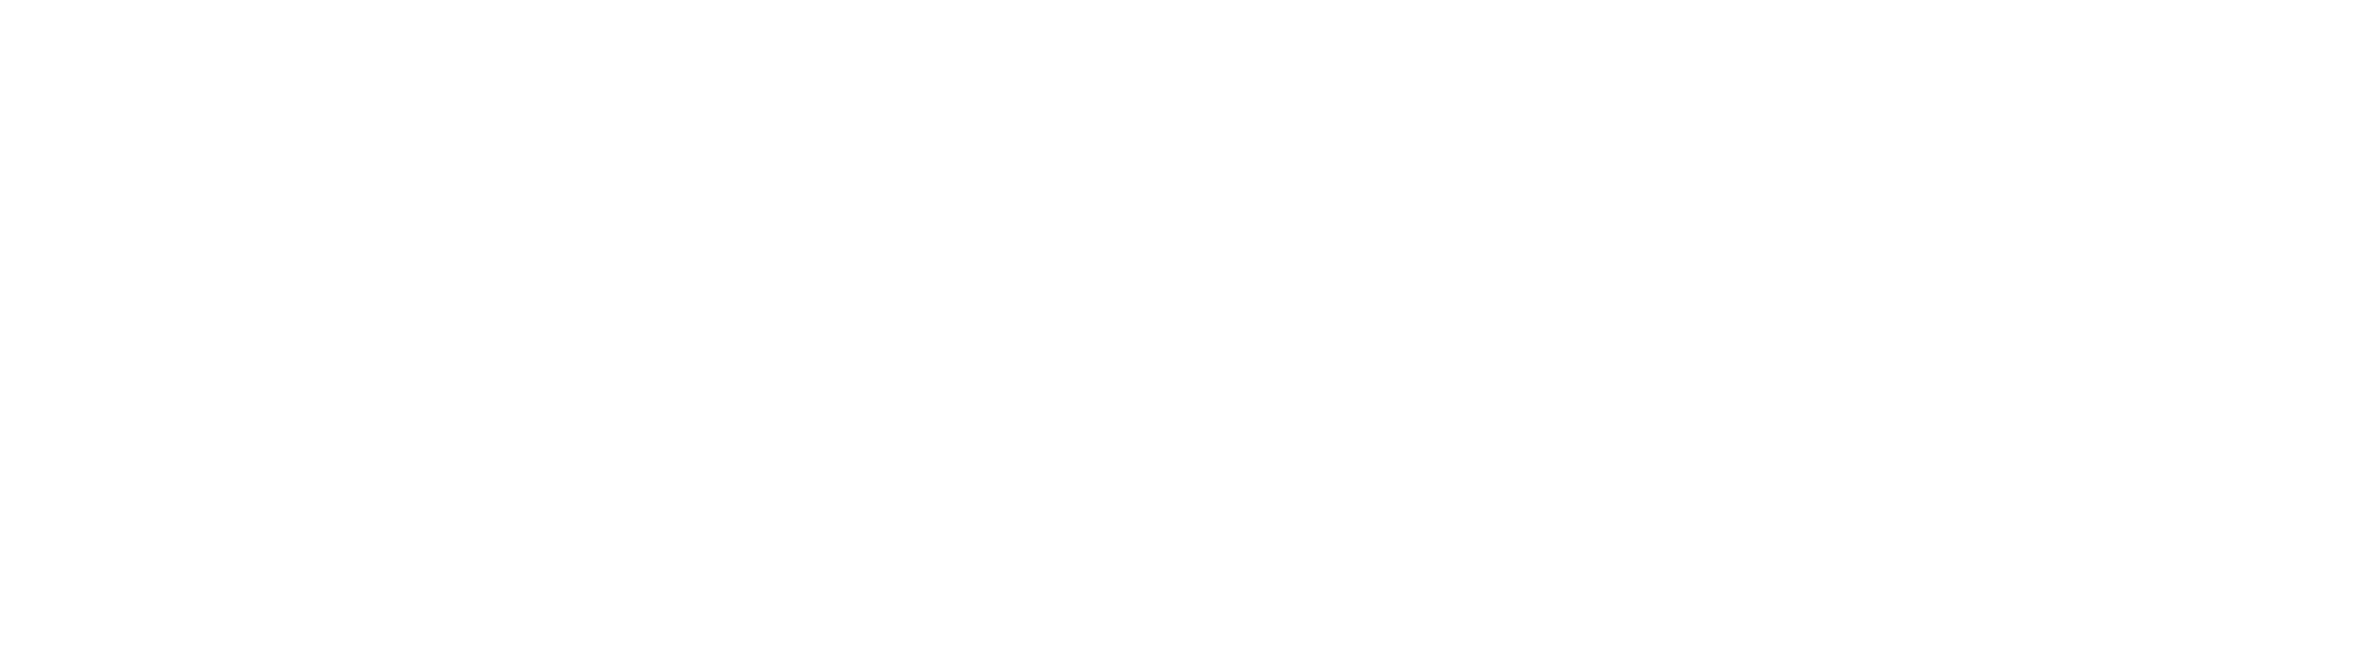 Das Team des Rosenmontagszuges 2023 Kölner Rosenmontagszeitung Offizielles Organ des Festkomitees Kölner Karneval von   